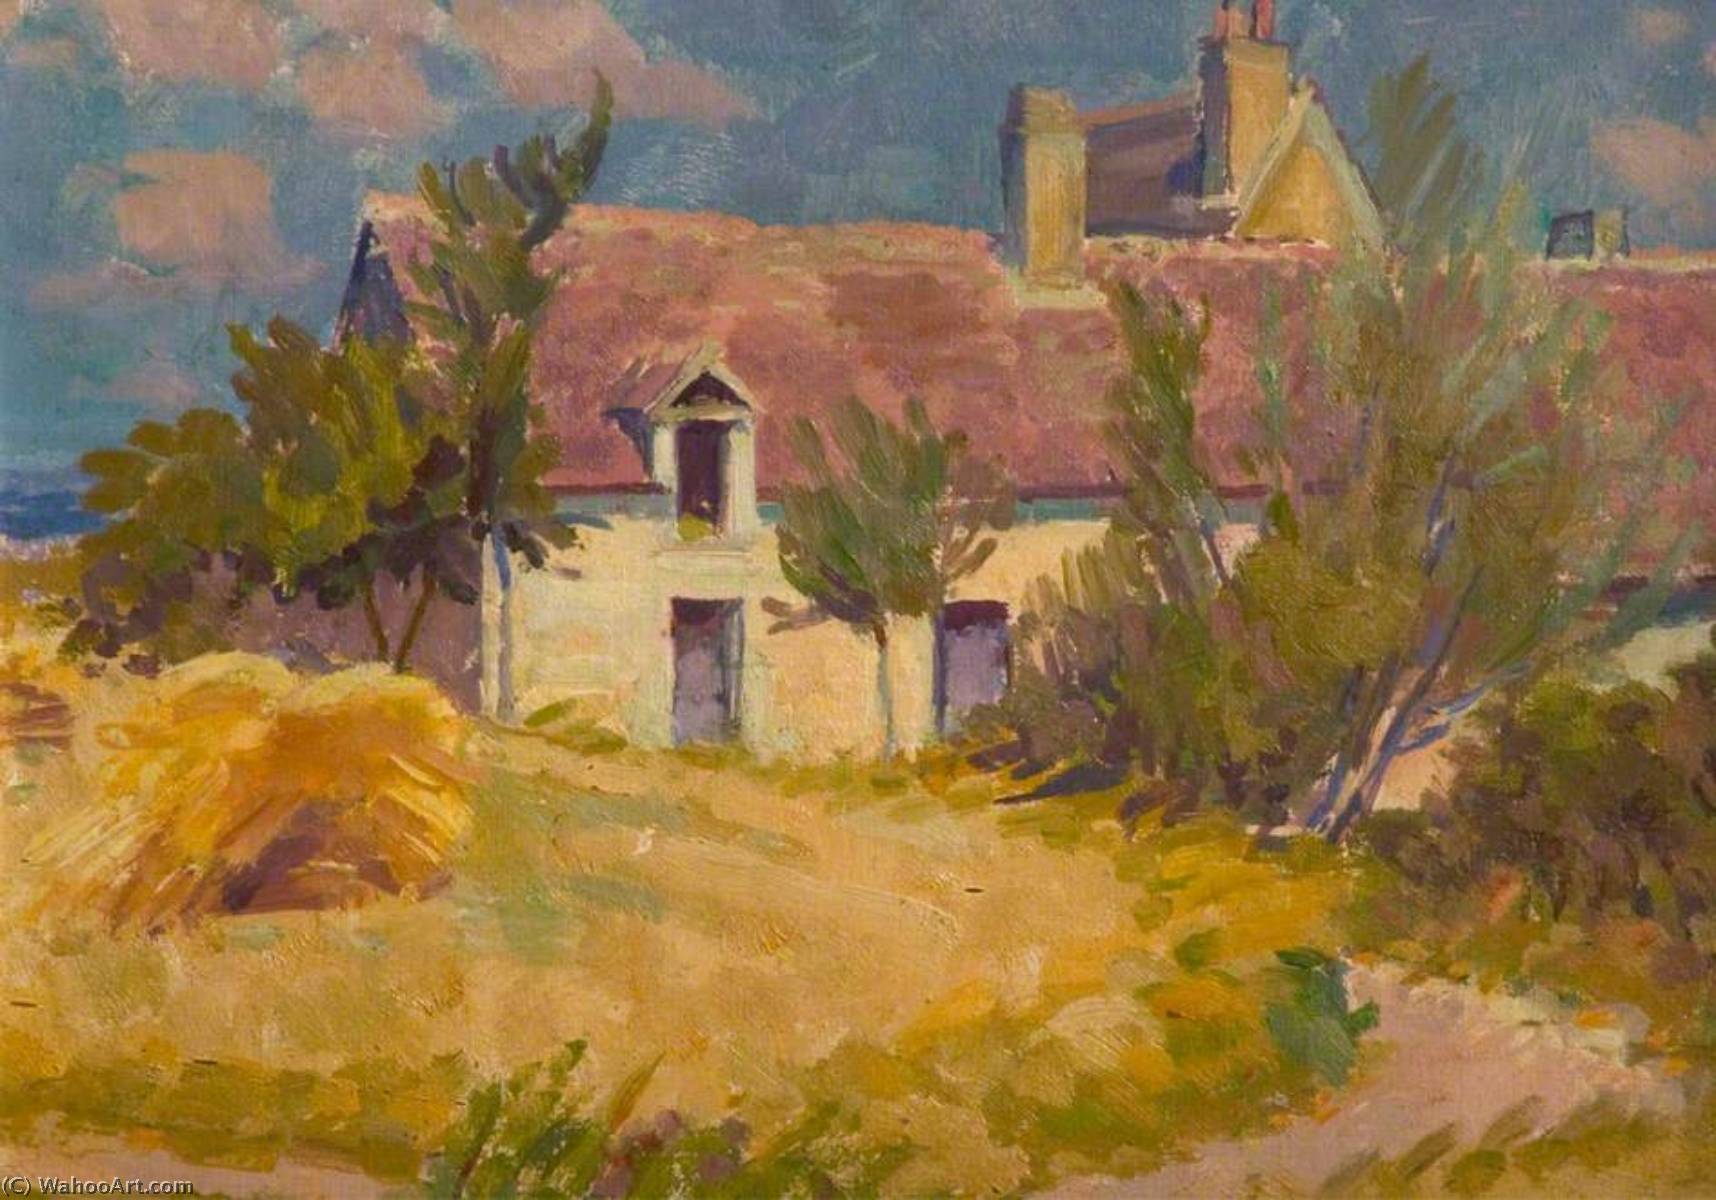 WikiOO.org - Encyclopedia of Fine Arts - Maľba, Artwork Henry Lamb - A French Farm